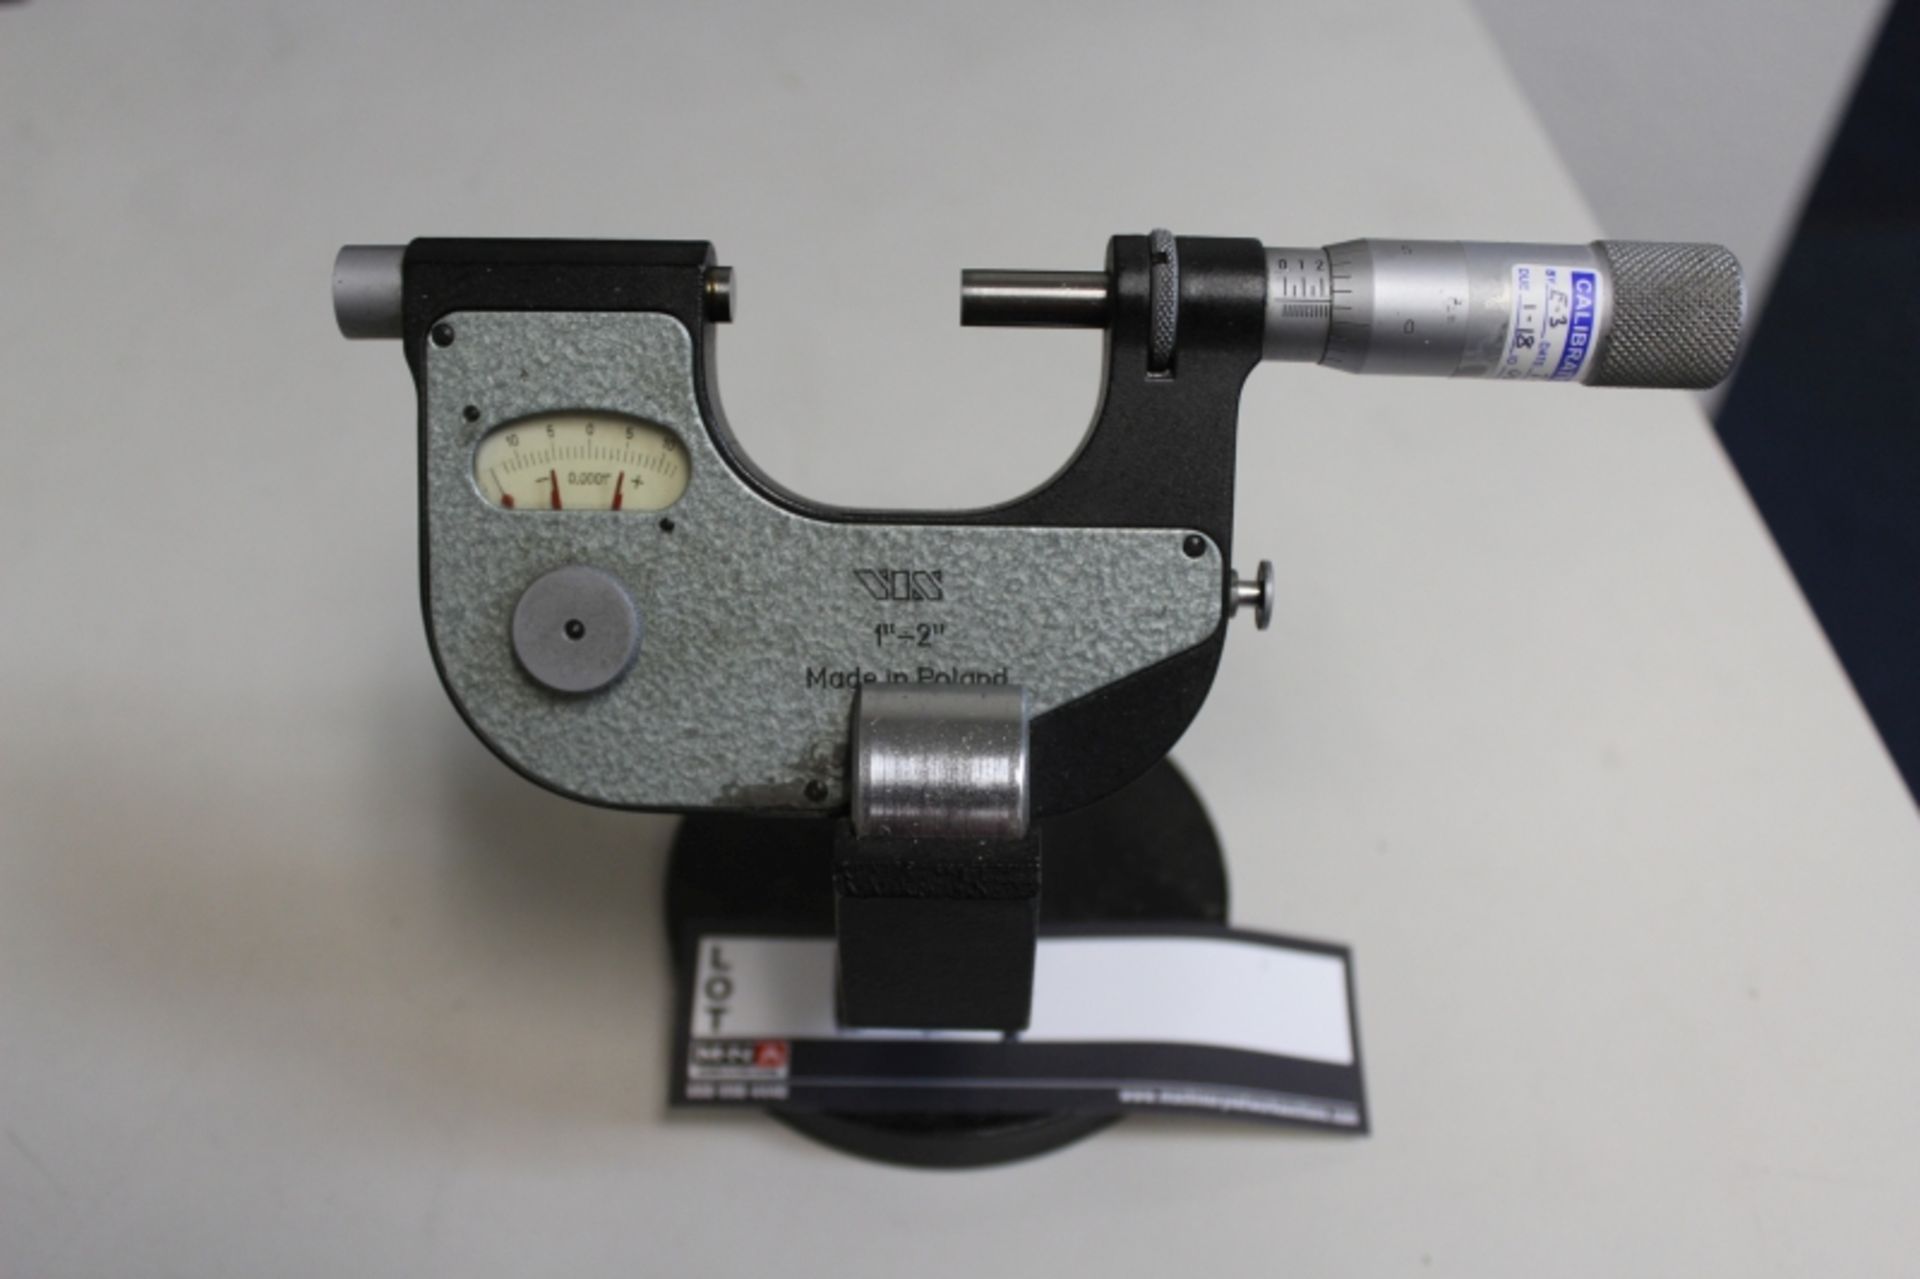 Vis 1" - 2" Indicating Micrometer